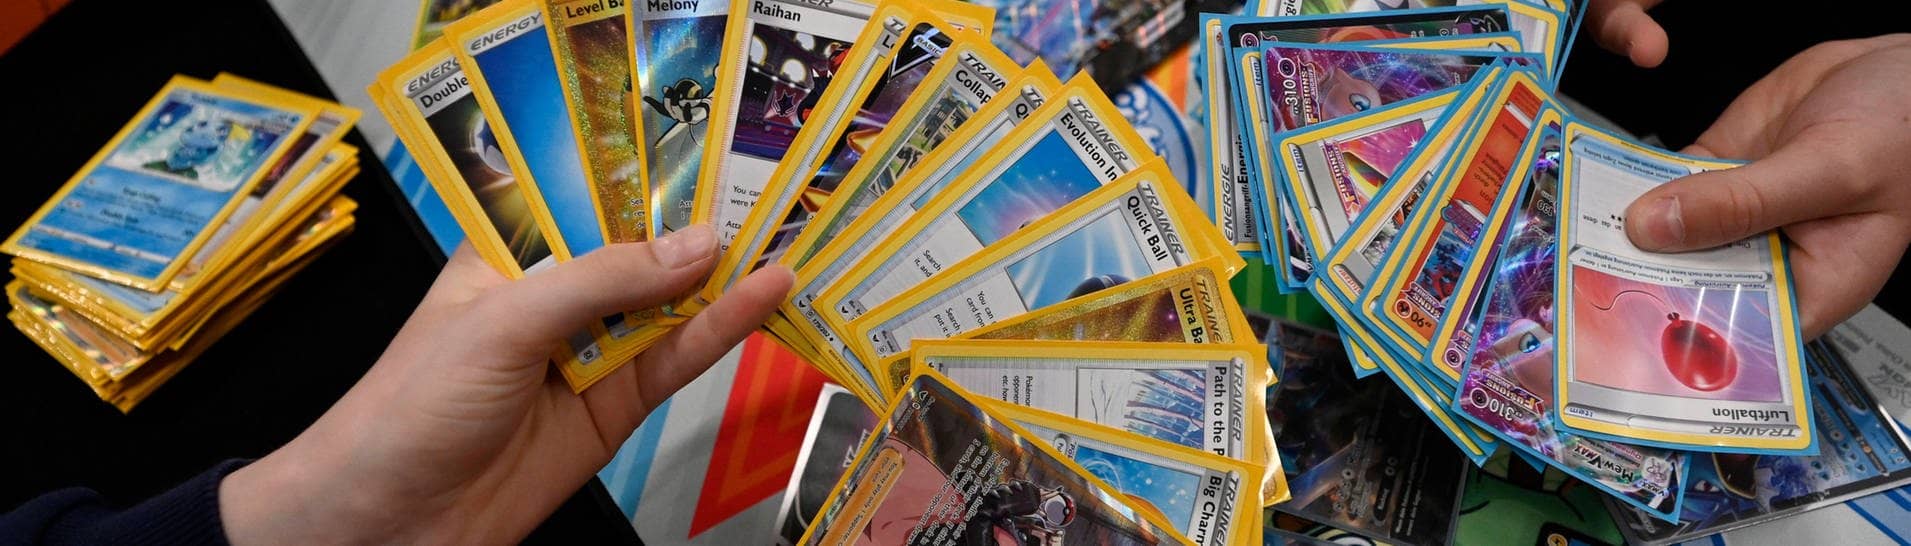 Spieler spielen mit Pokémon-Karten während der Pokémon-Europameisterschaft auf der Messe Frankfurt. In Japan gibt es immer mehr Raubüberfälle wegen der wertvollen Pokémon-Karten.  (Foto: IMAGO, IMAGO / brennweiteffm)